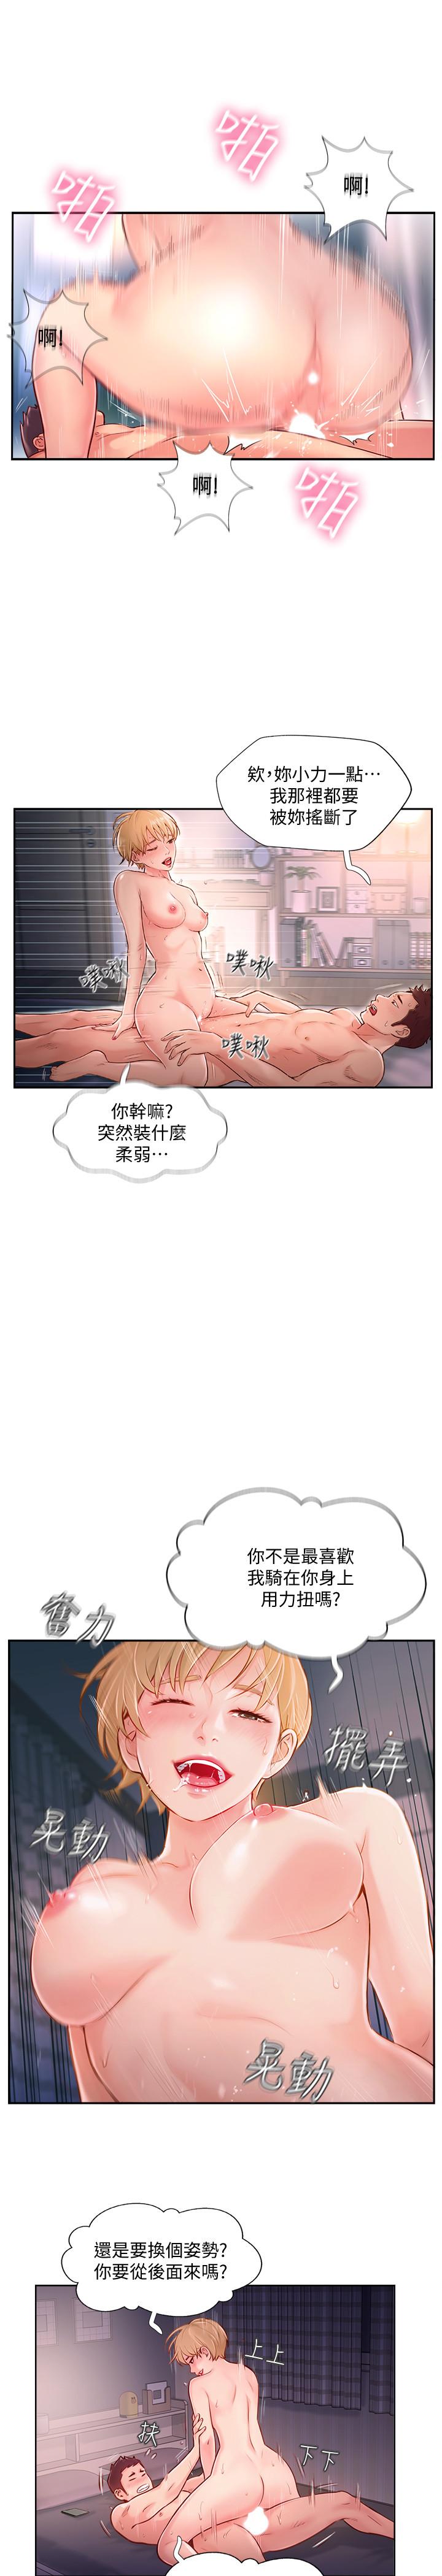 韩国污漫画 完美新伴侶 第4话-我想做想到快疯了 17